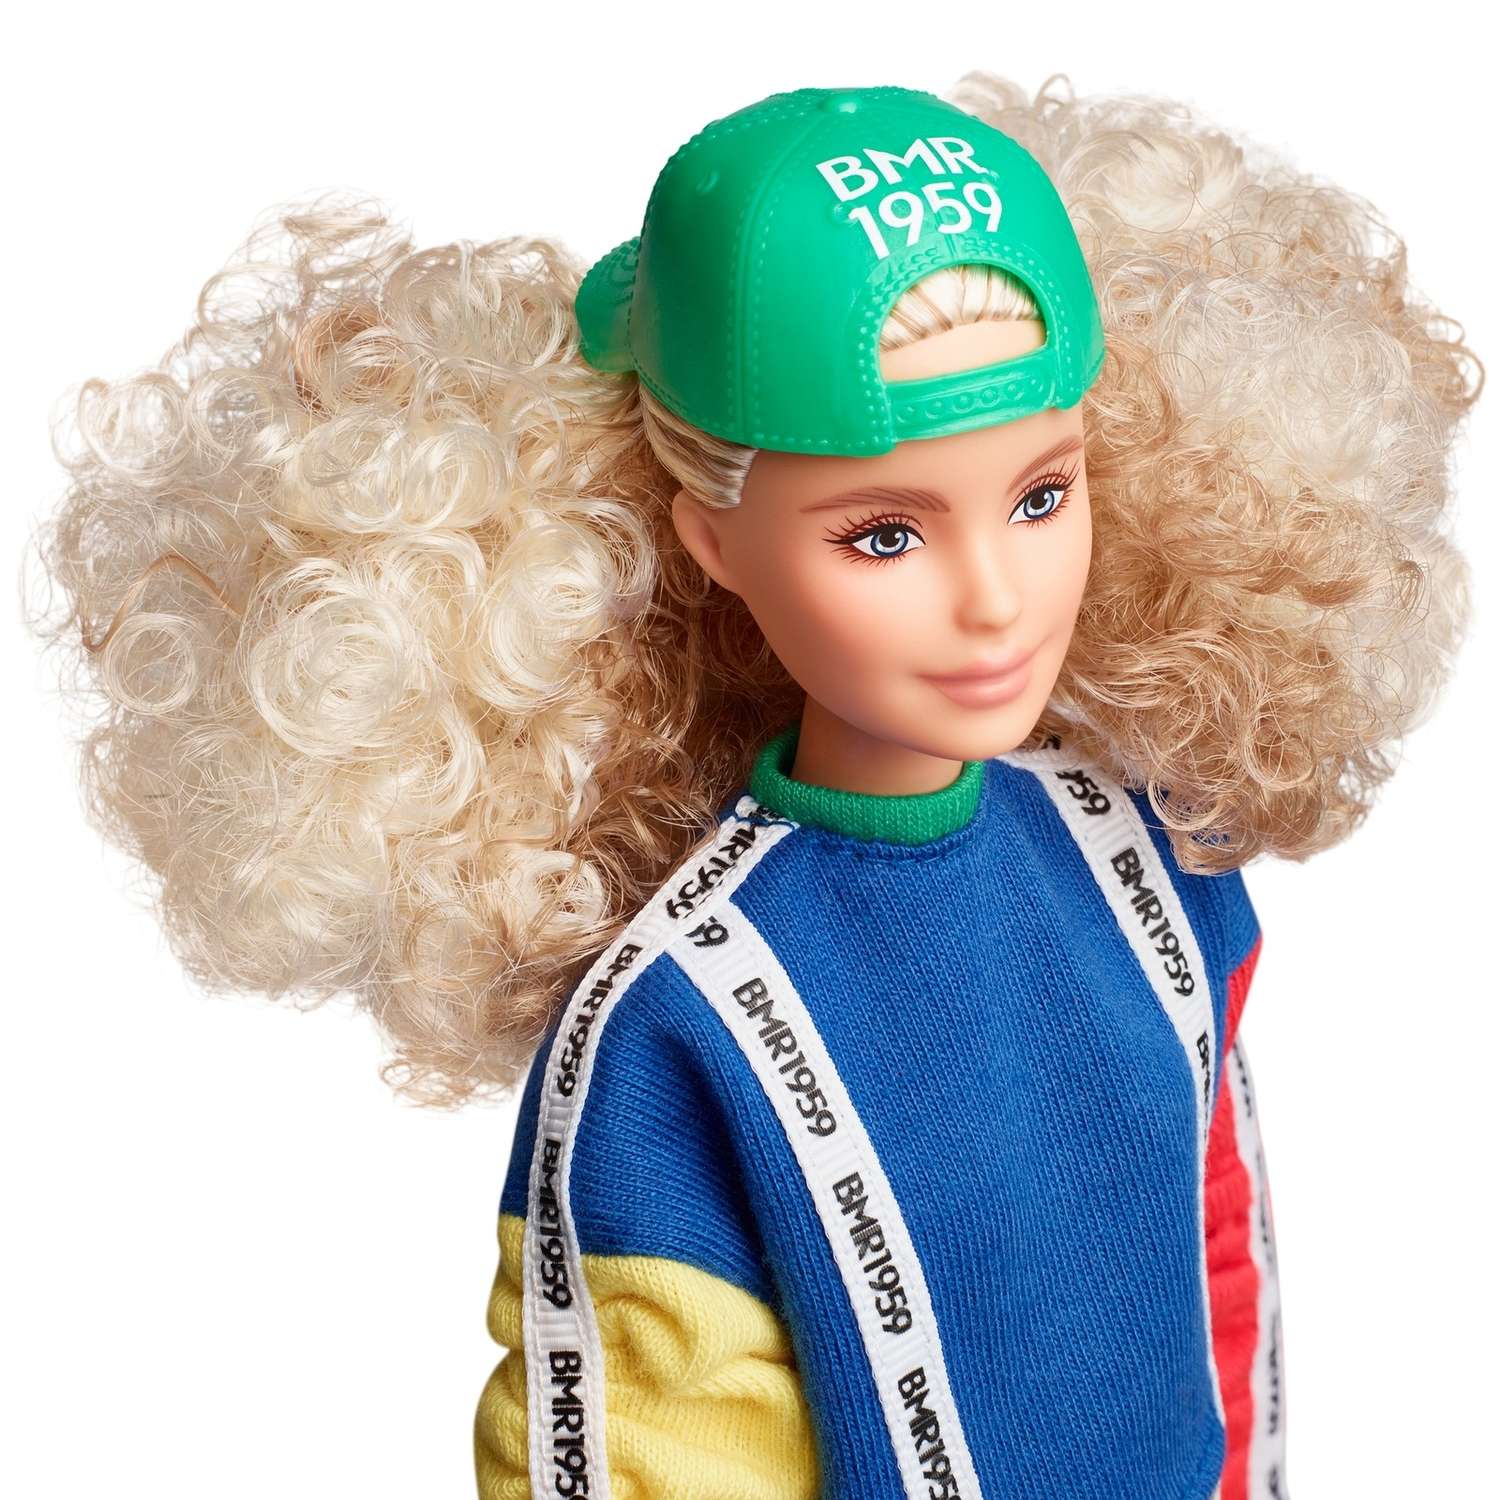 Кукла Barbie коллекционная BMR1959 GHT92 GHT92 - фото 11